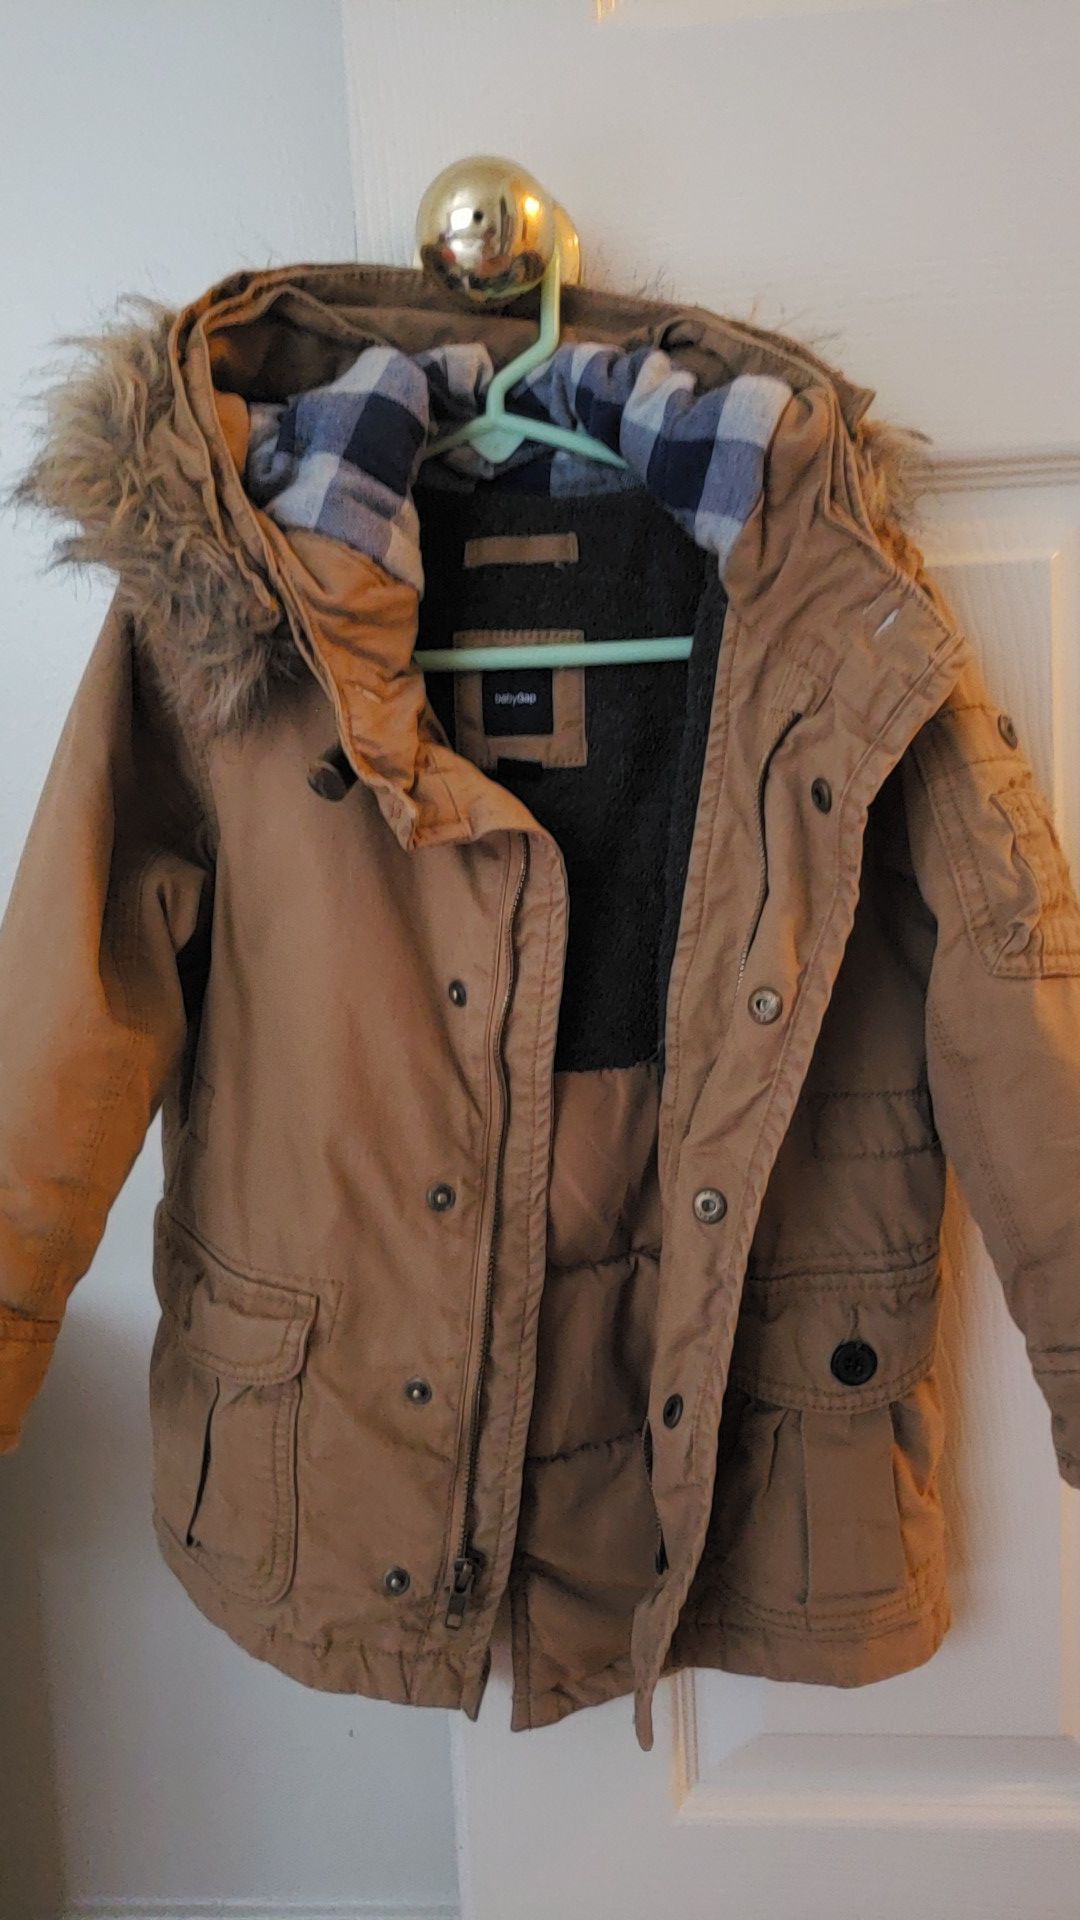 Gap winter jacket 3T